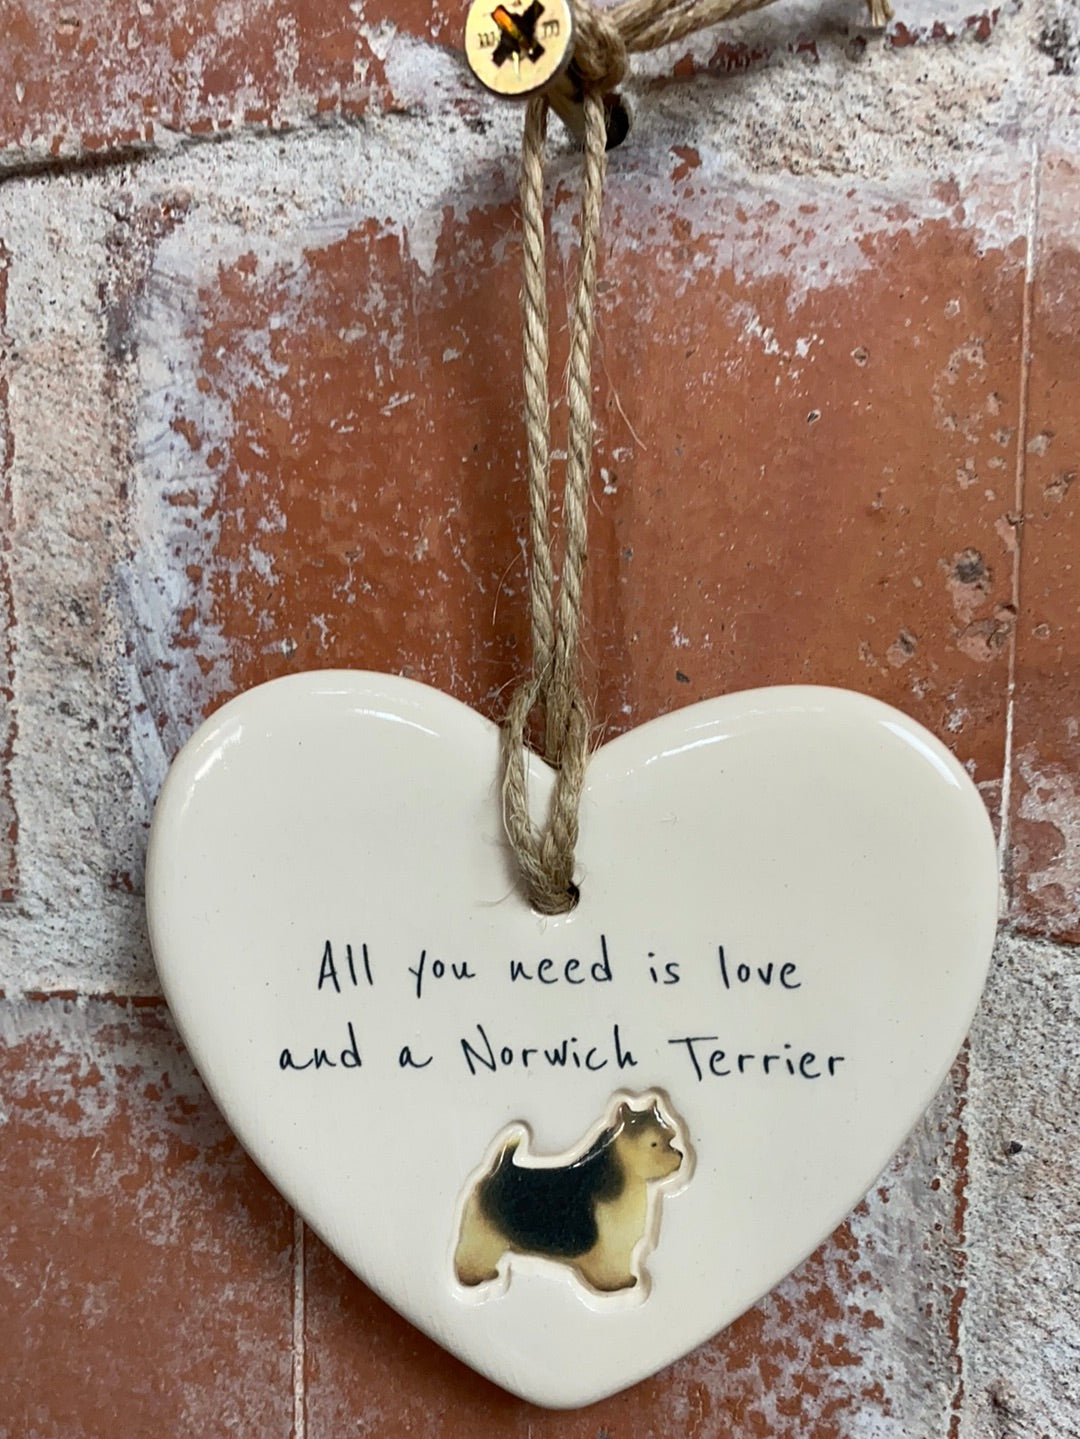 Norwich Terrier ceramic heart